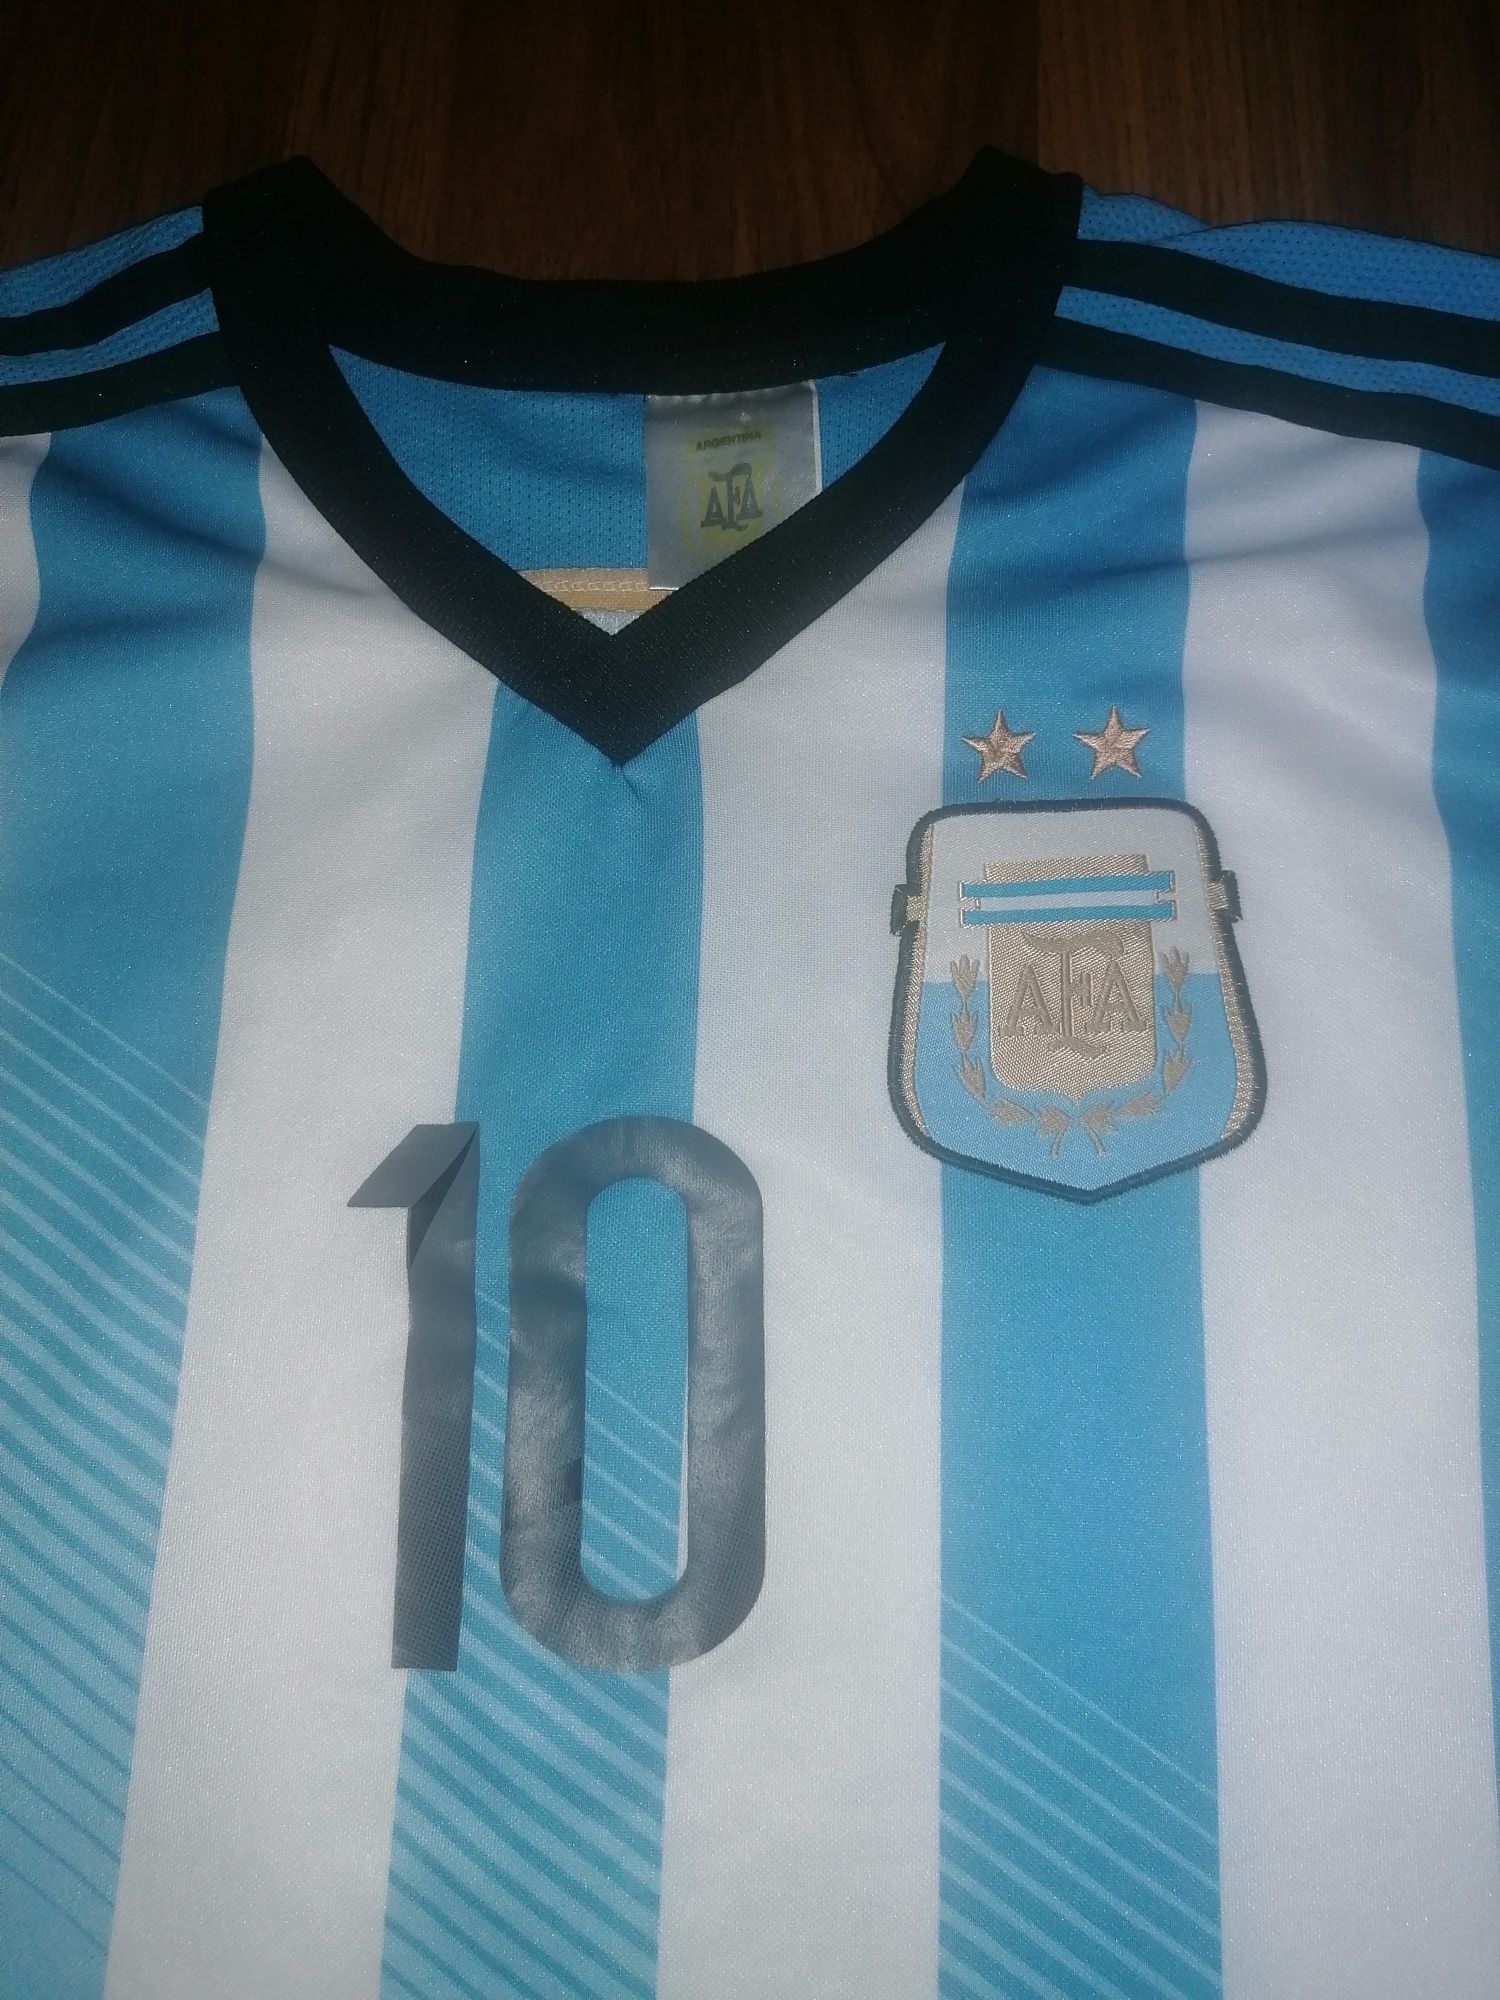 Tricou naționala Argentina nr 10 Messi